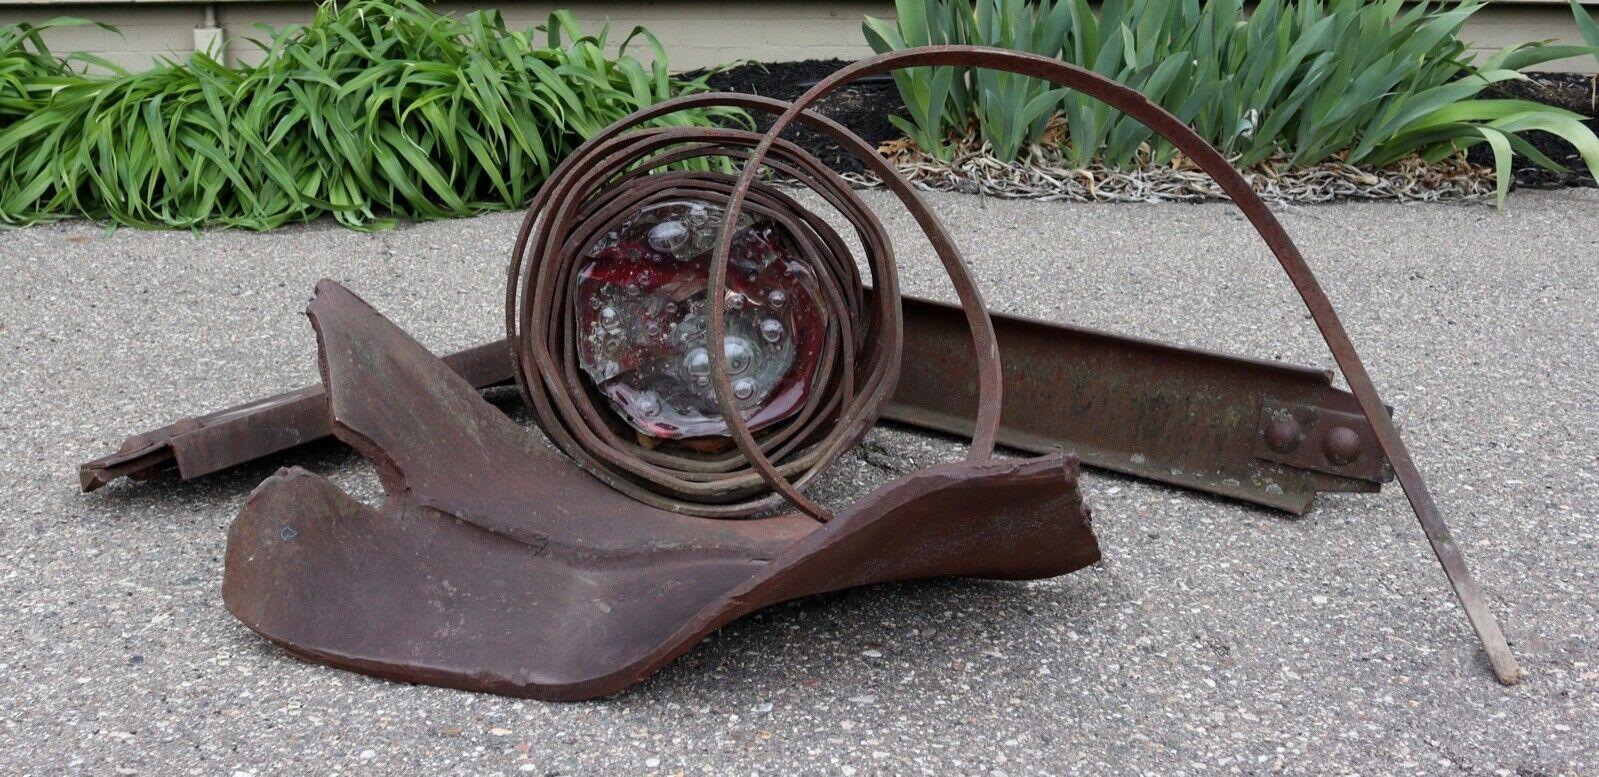 Nous vous proposons une sculpture contemporaine d'extérieur éclectique en métal et en verre de l'artiste de Detroit Albert Young (22 x 55 x 24). Albert Young gère un studio/école de verre indépendant depuis 1983 et est un membre essentiel de la